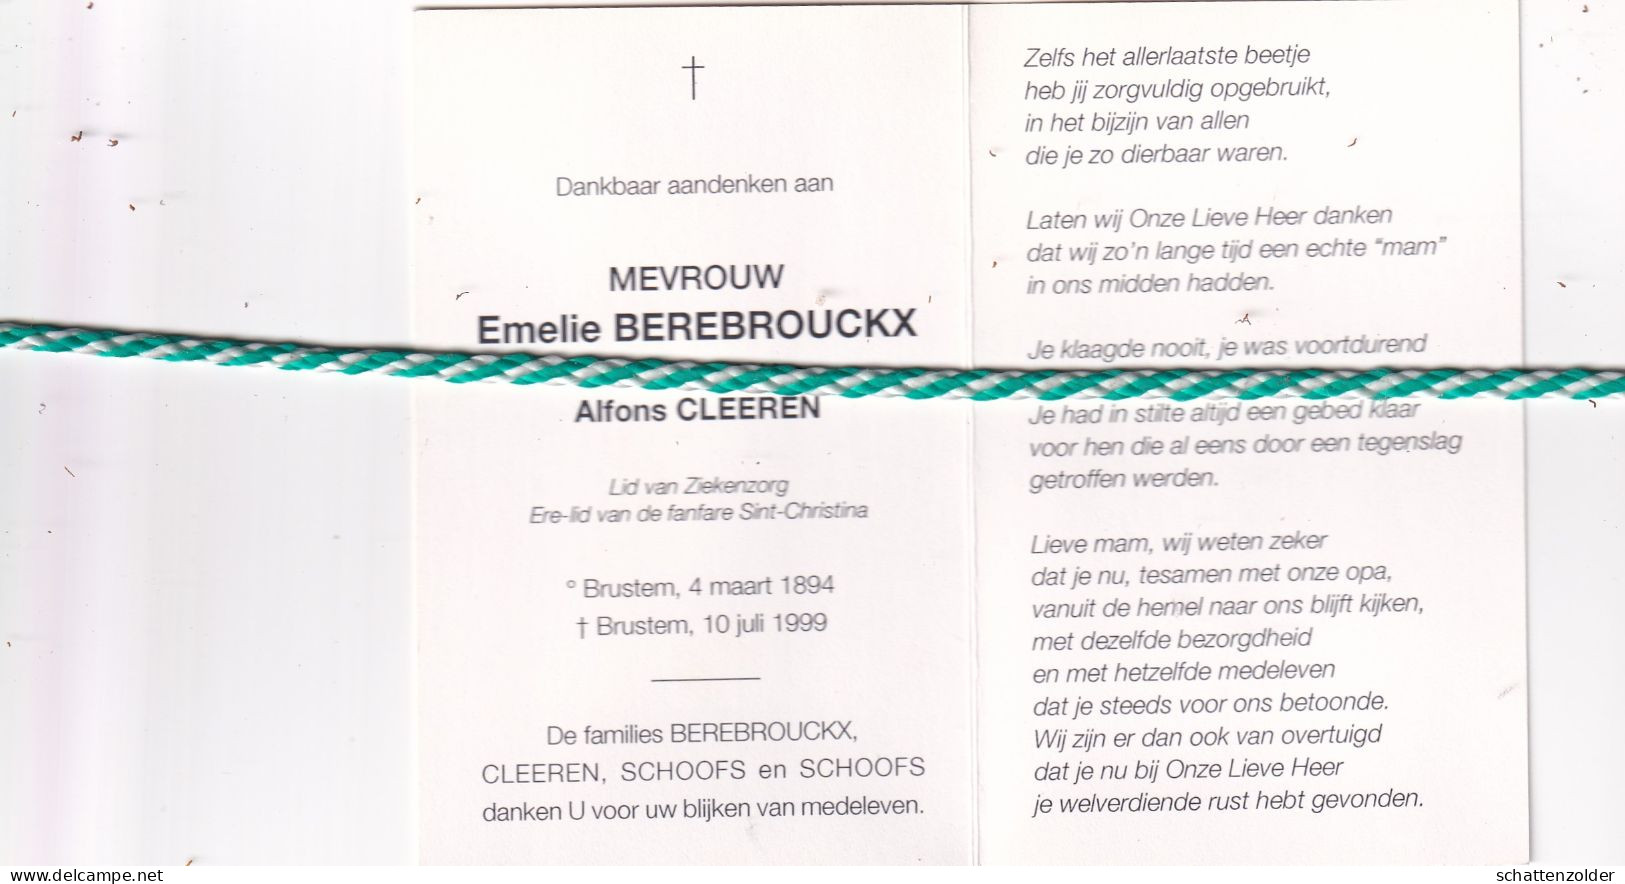 Emelie Berebrouckx-Cleeren, Brustem 1894, 1999. Honderdjarige. Foto - Décès